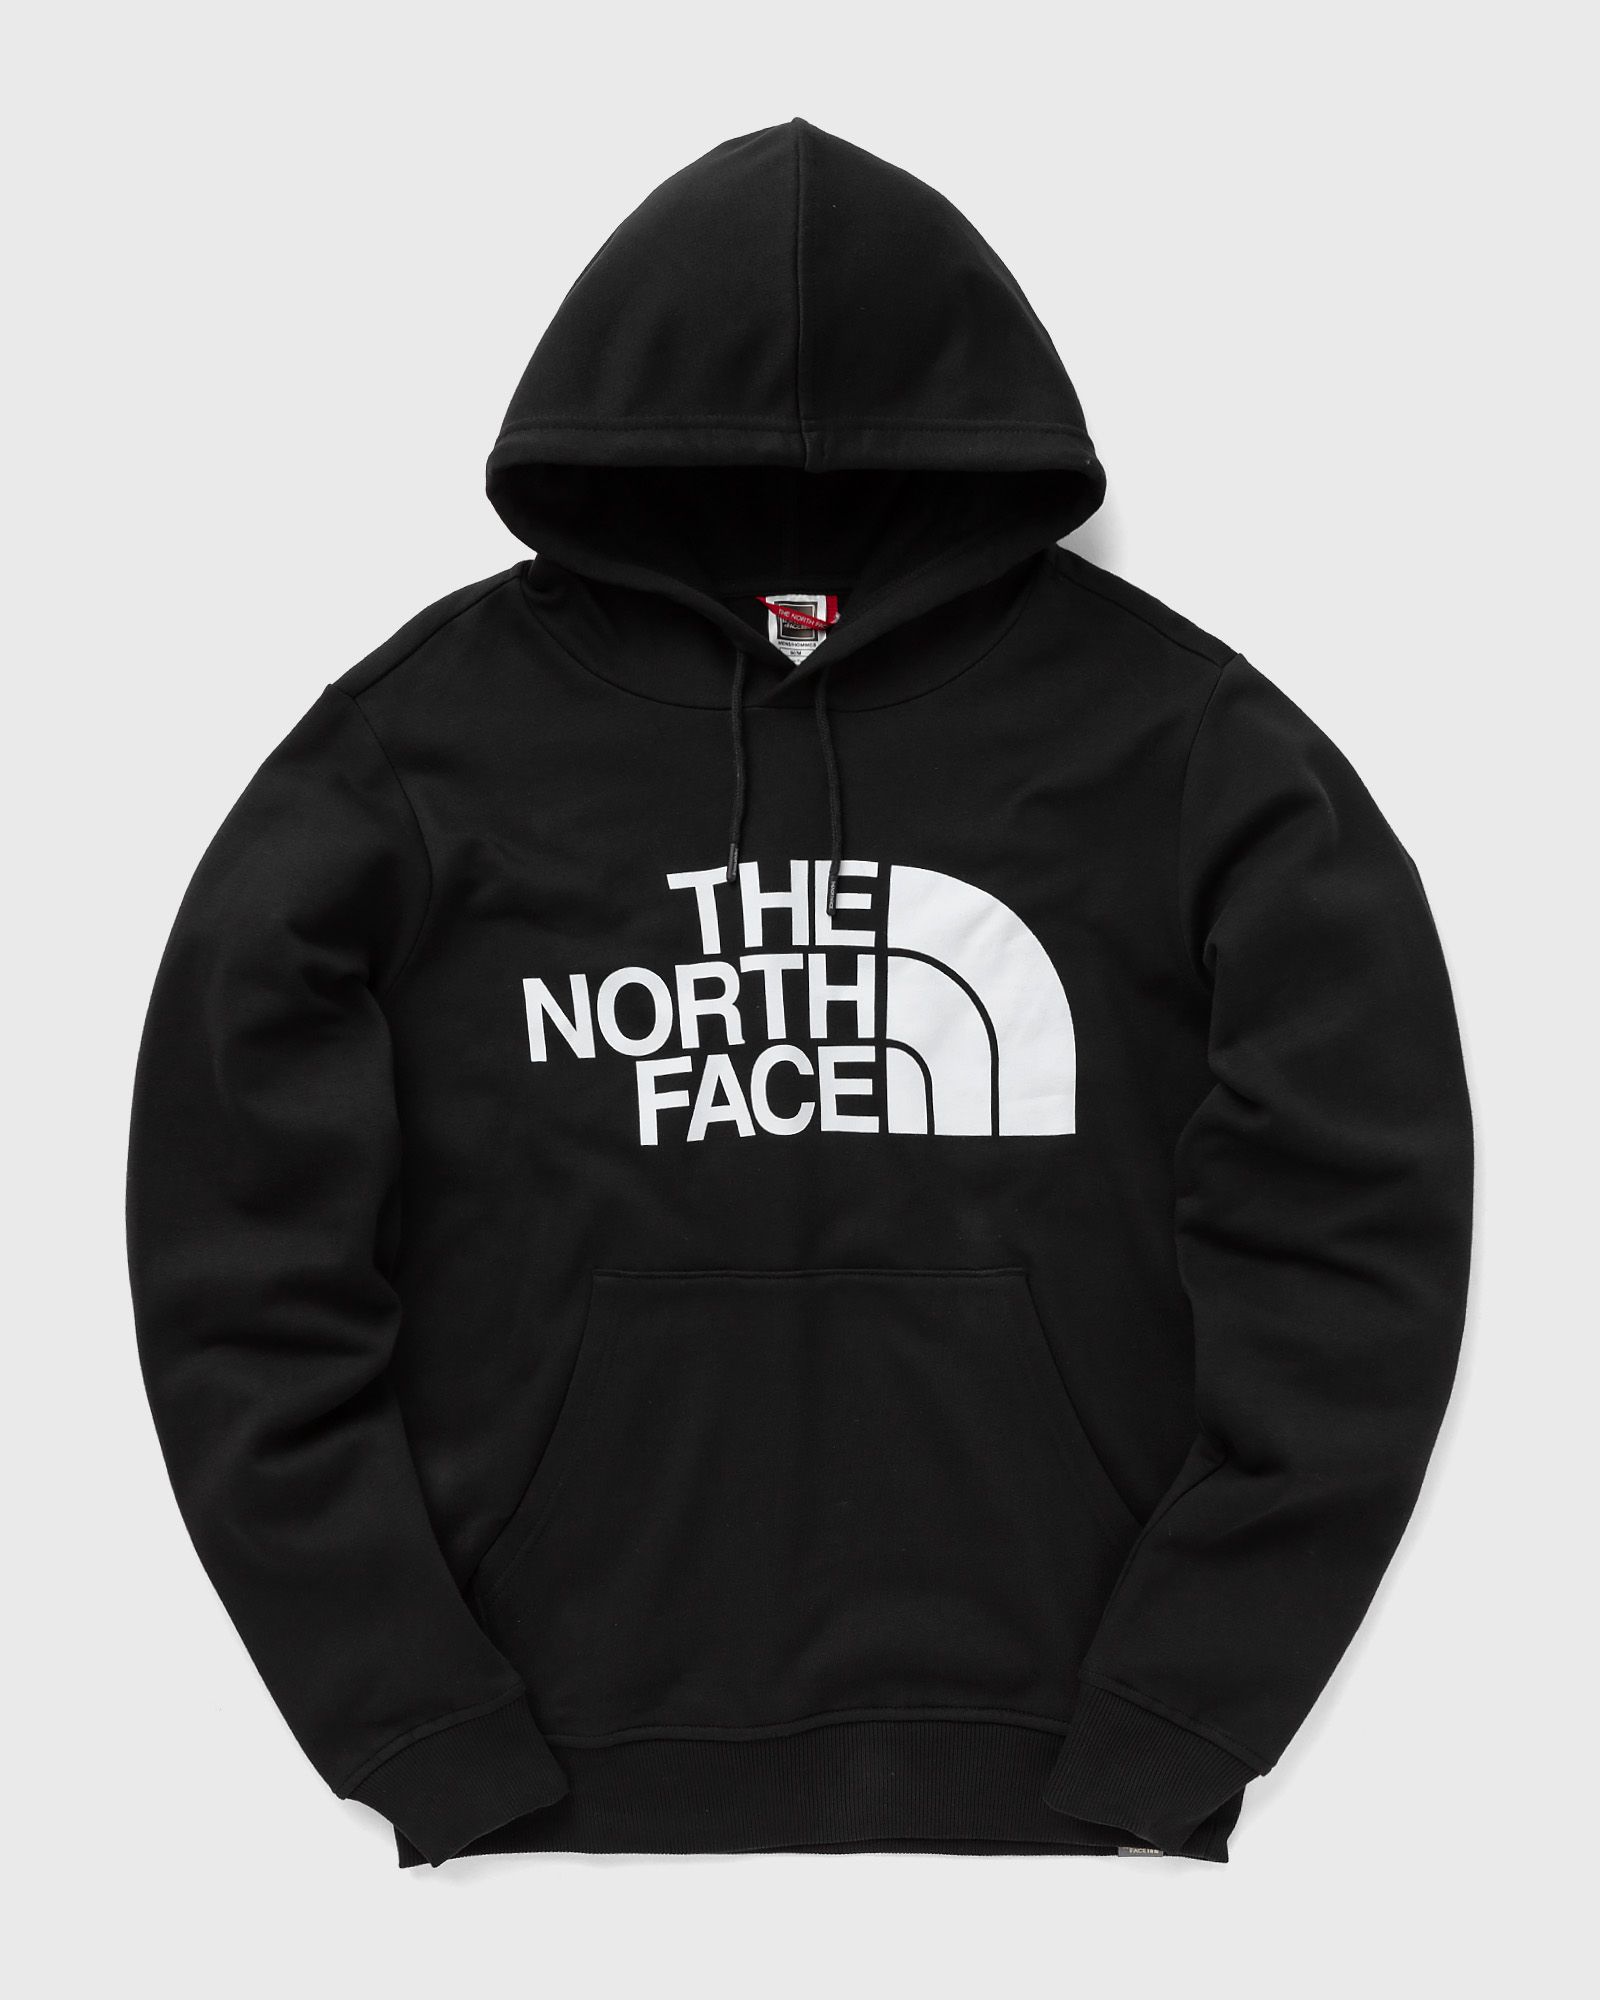 The North Face - standard hoodie men hoodies black in größe:m